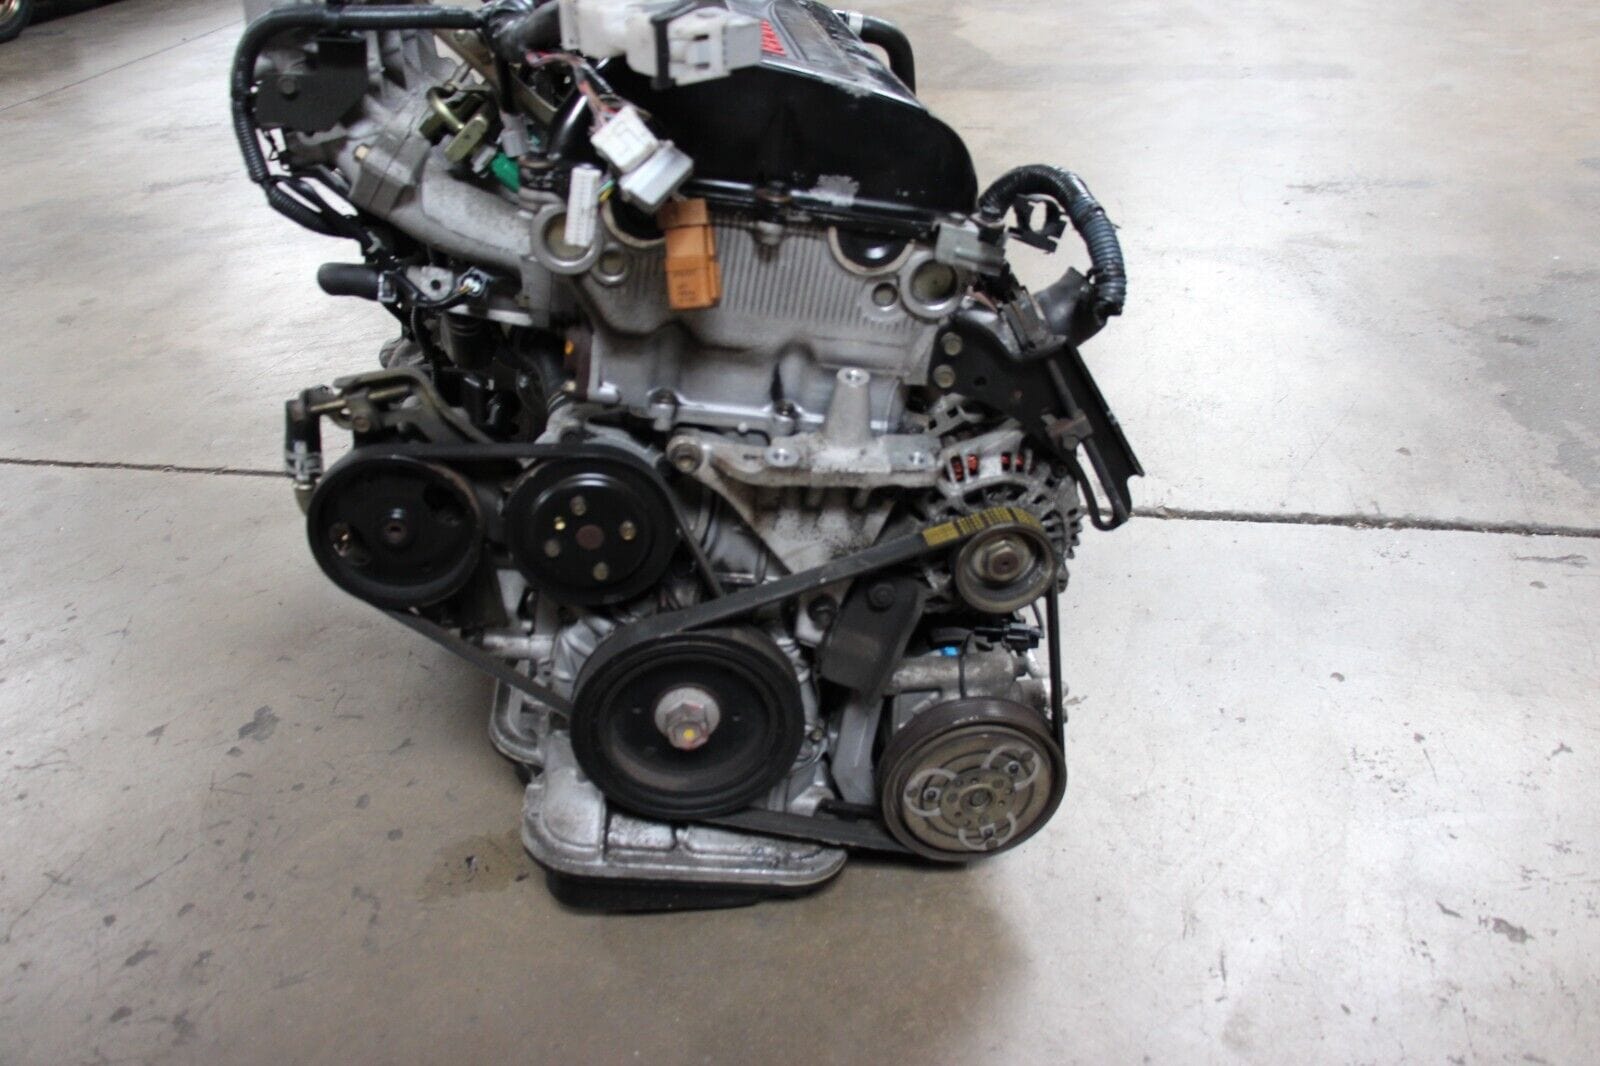 JDM Nissan Sentra Pulsar Primera SR20VE NEO VVL Engine 6 Speed Manual Transmission Harness & ECU Included - JDM Hotline